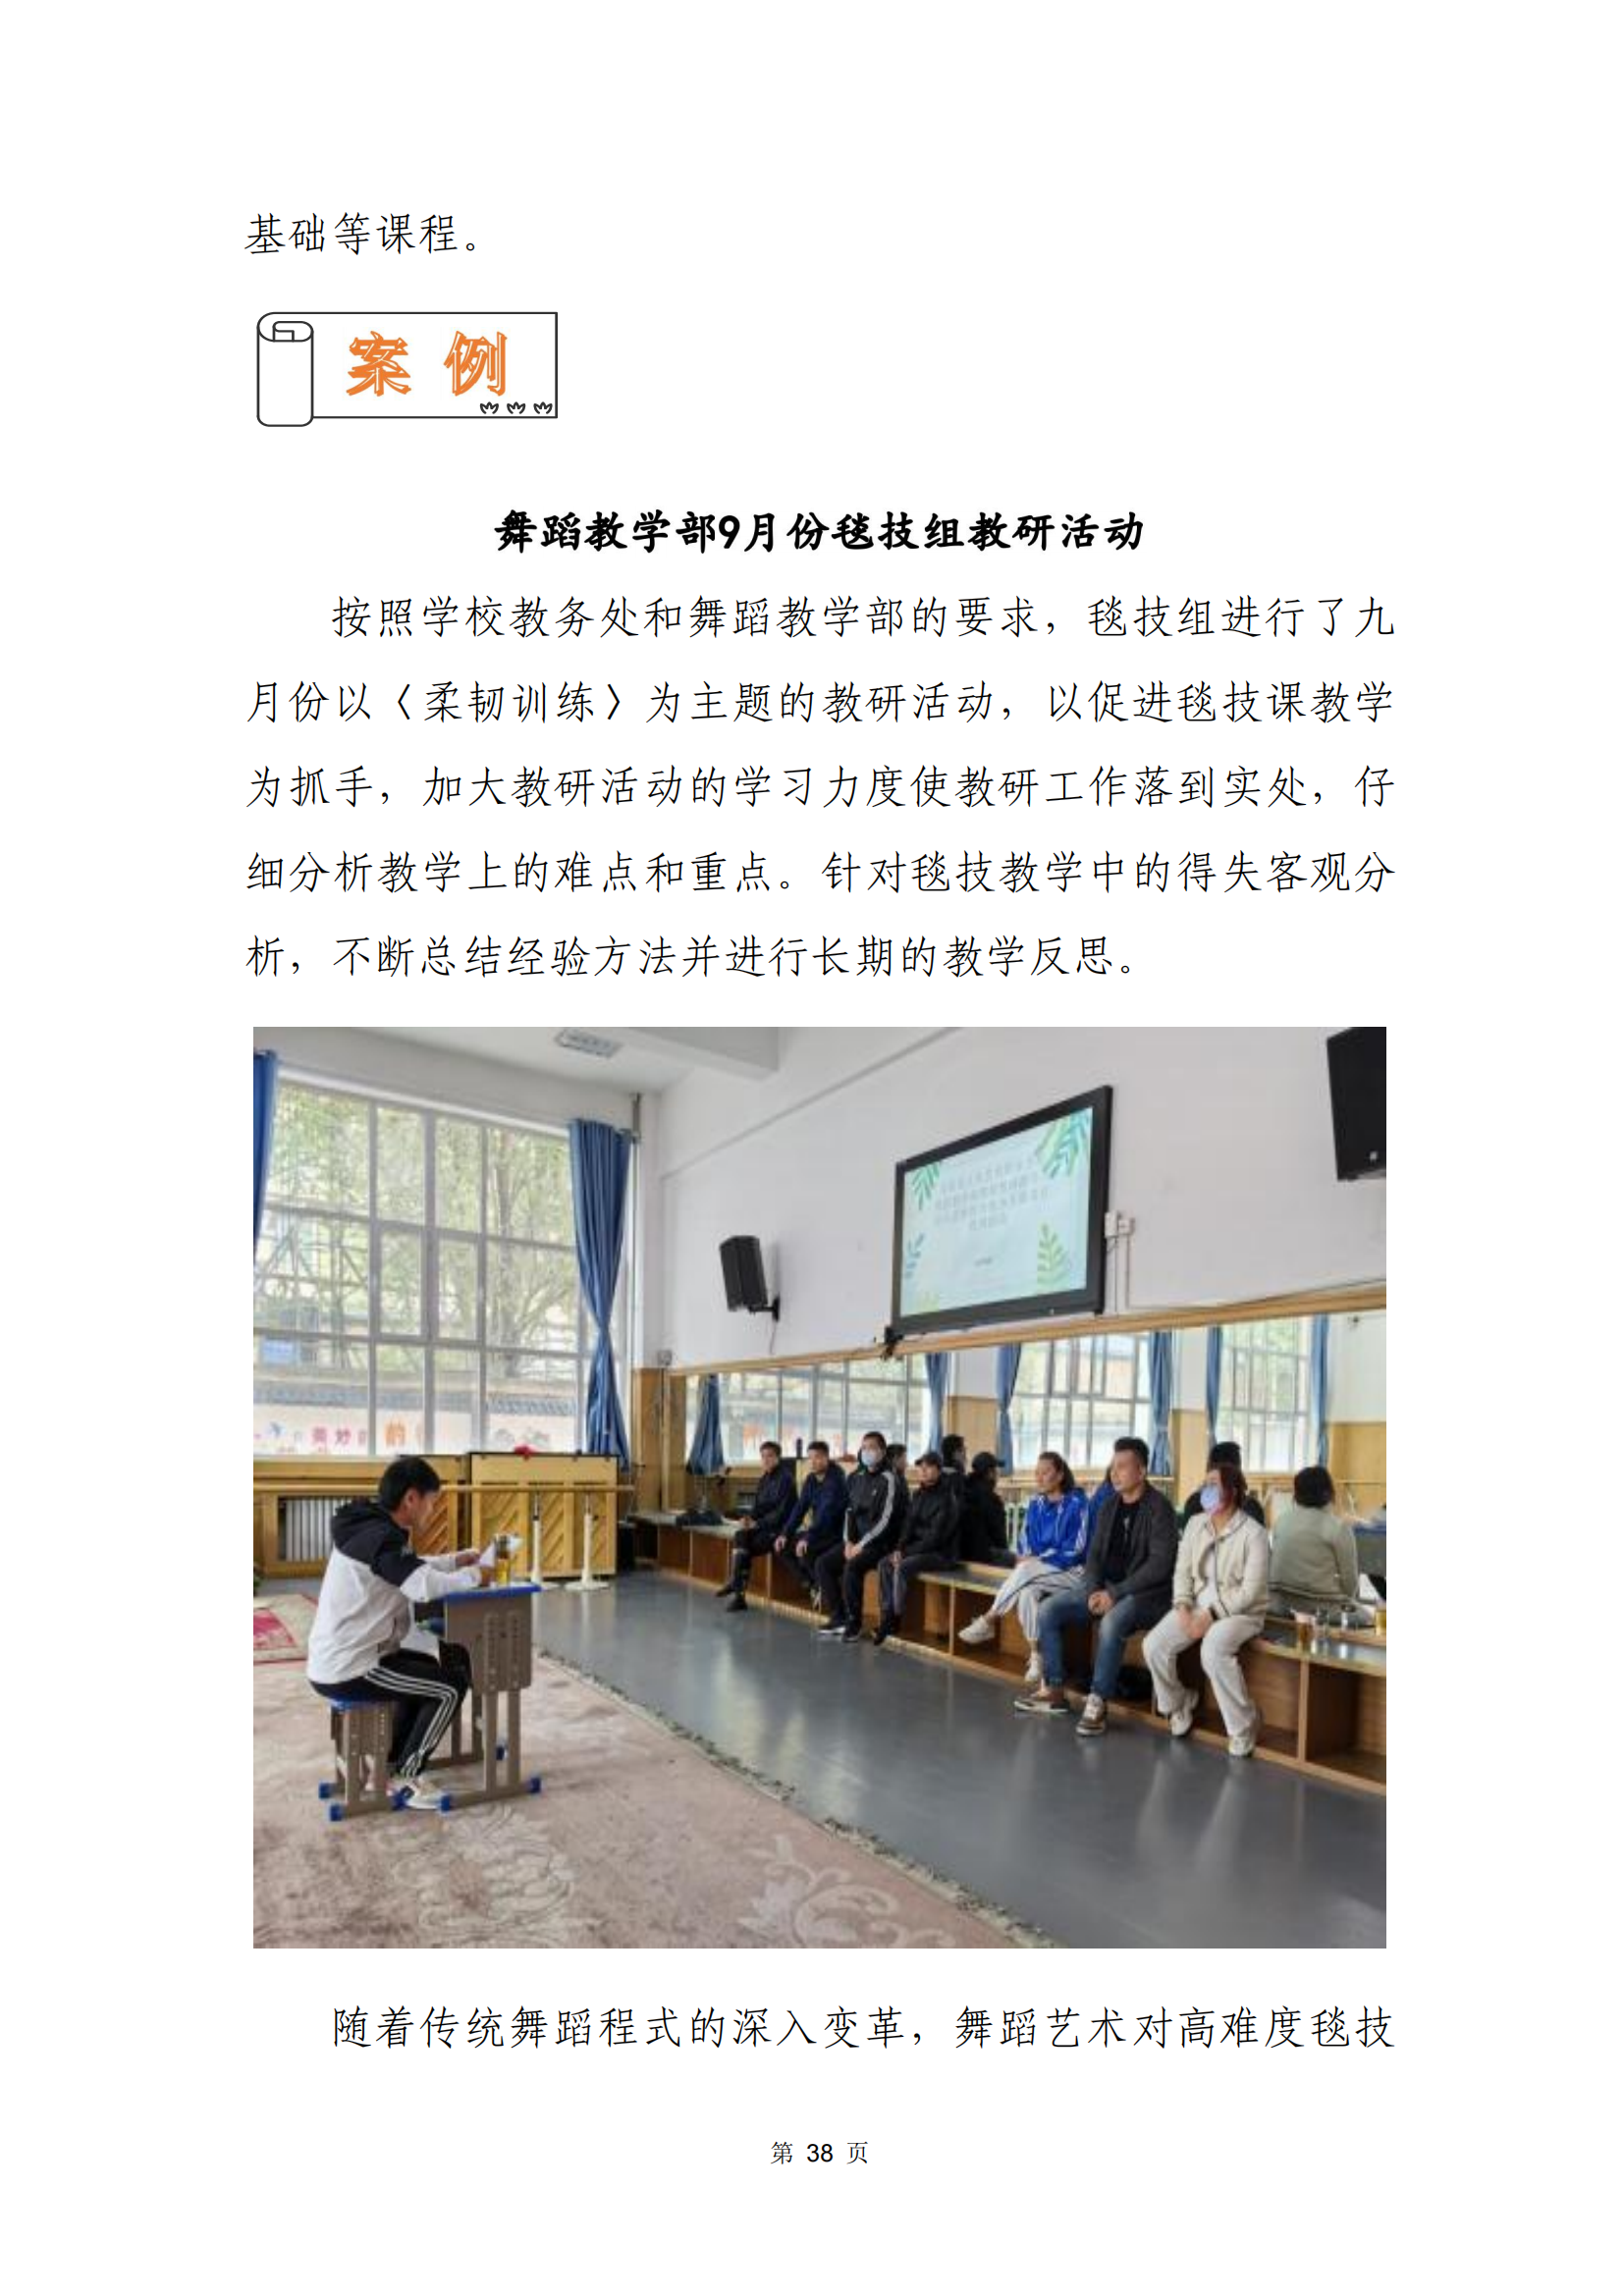 青海省文化艺术职业学校教育质量年报_45.png